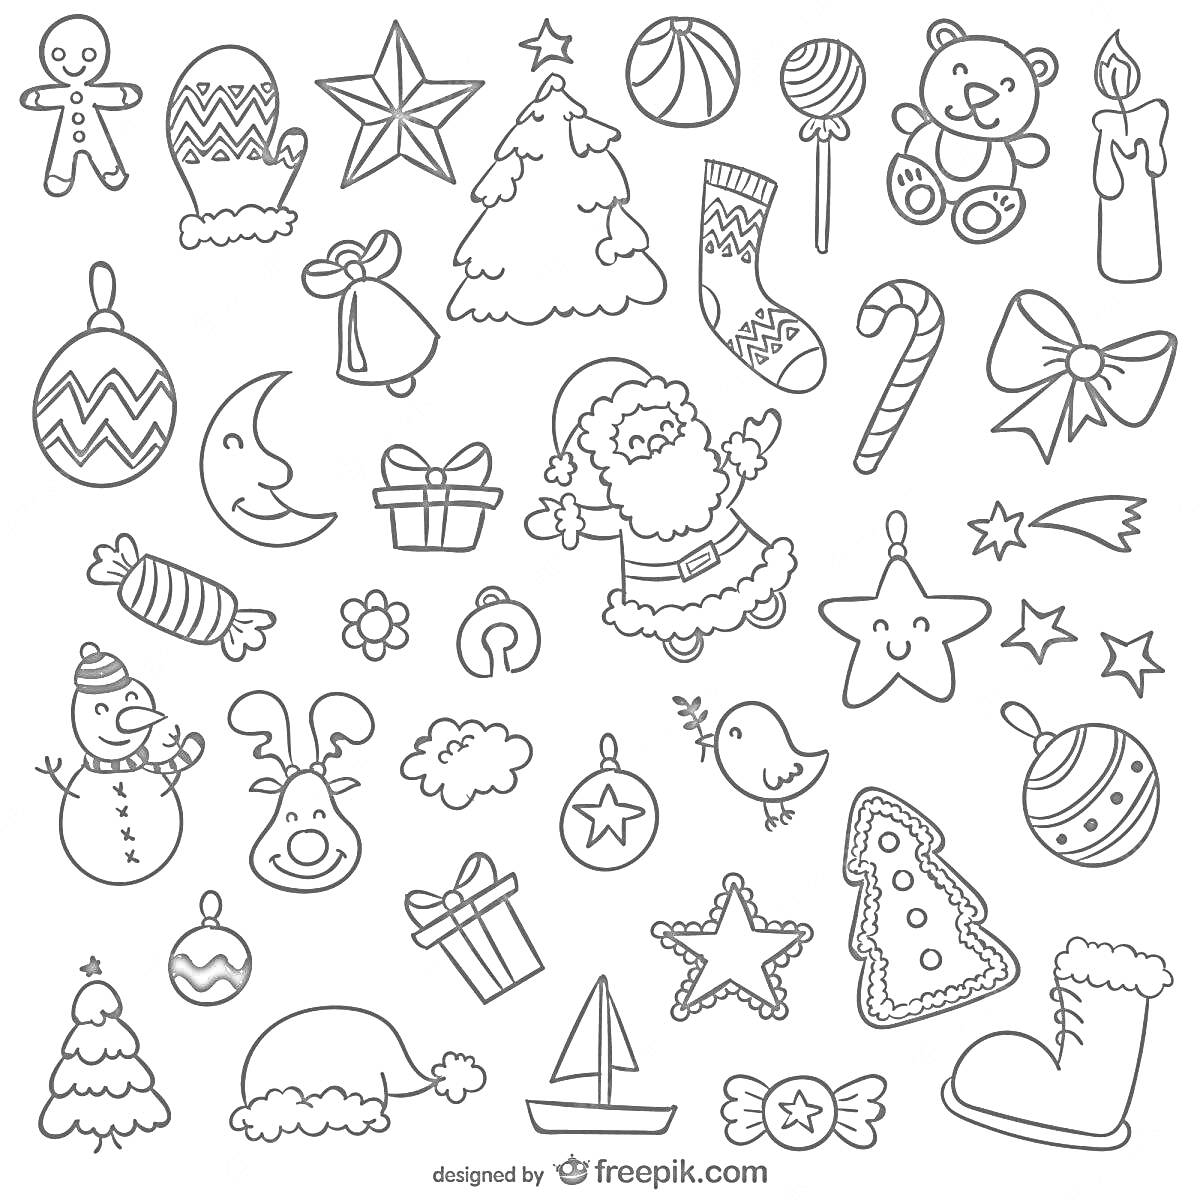 Раскраска Новогодние наклейки с новогодней елкой, Дедом Морозом, оленьими рогами, елочными шарами, пряником, подарками, конфетами, звездой, варежкой, снежным человеком, снеговиком, луной, колокольчиком, барабаном, птицей, свечой, медвежонком, лукой, леденцом, снеги